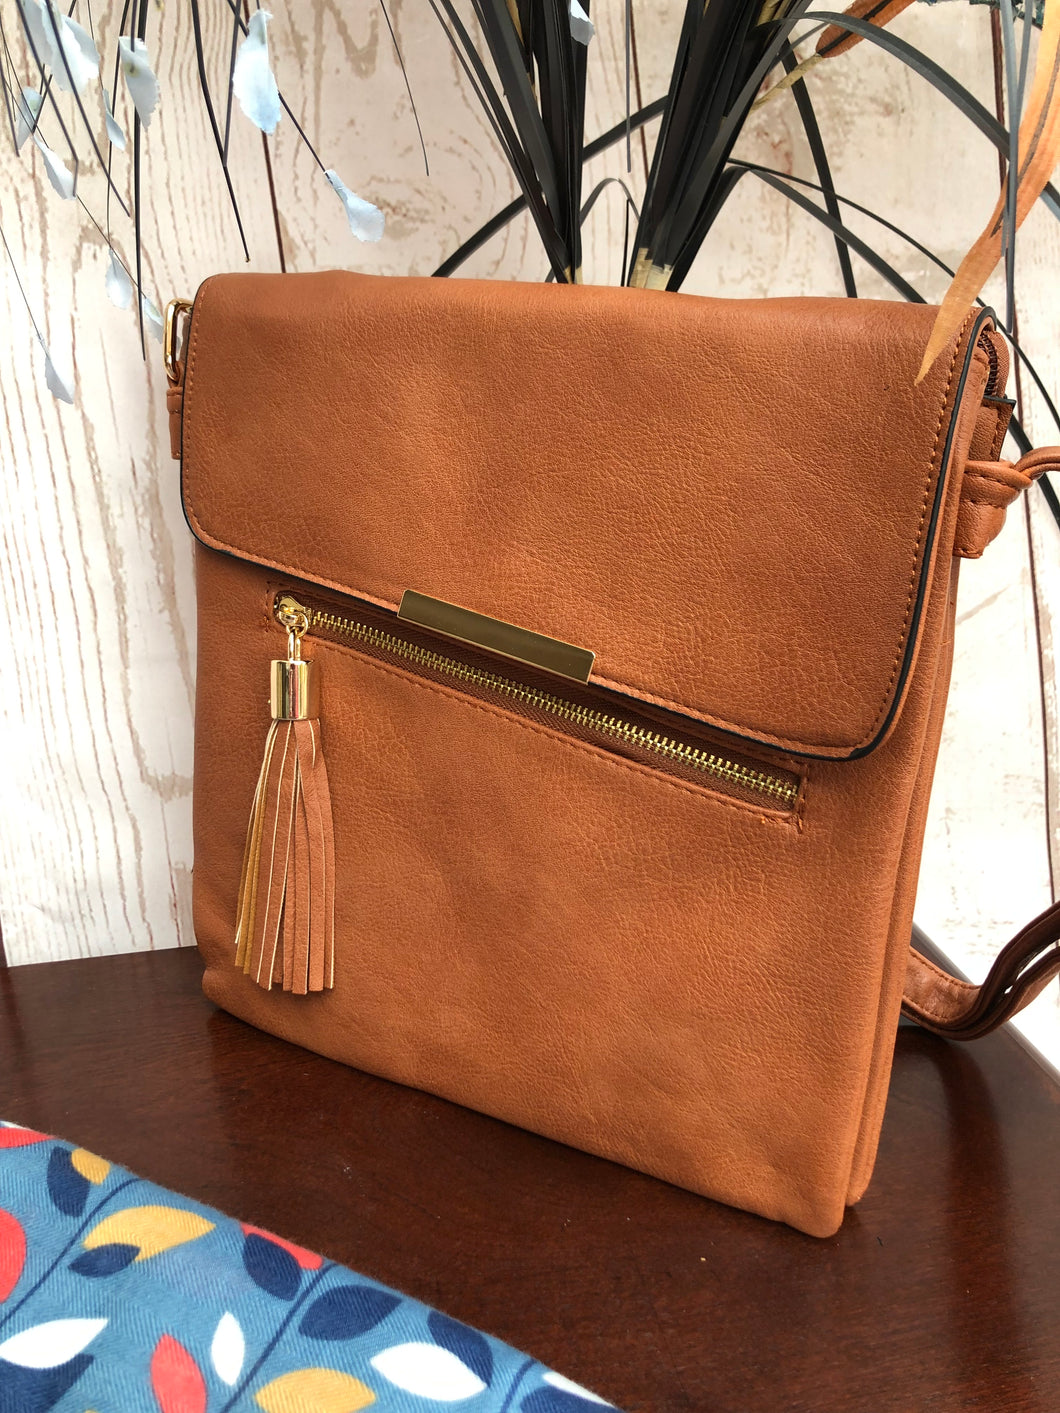 Ladies Crossbody Handbag with Zip and Tassel Detail - BROWN